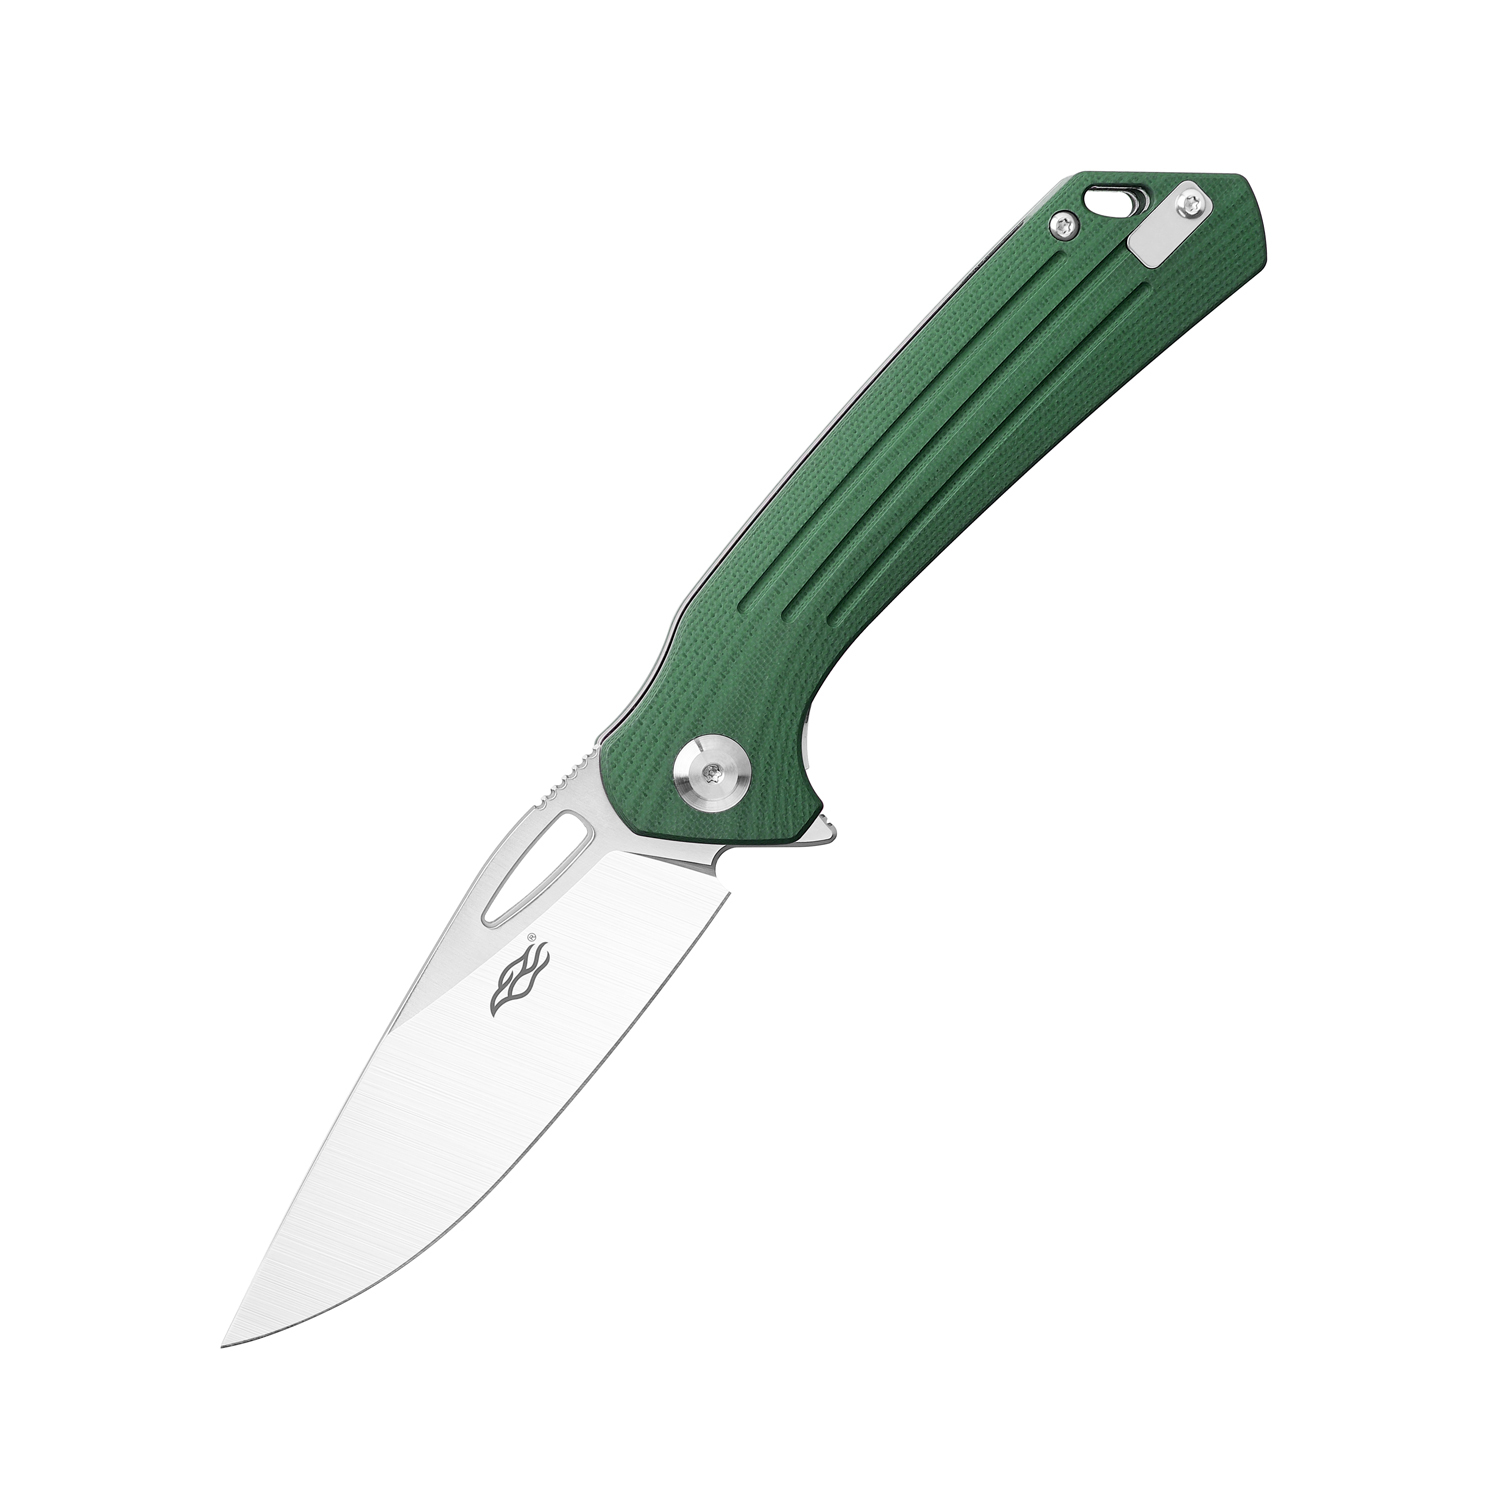 Складной нож Firebird FH921-GB, сталь D2, рукоять G10 зеленая